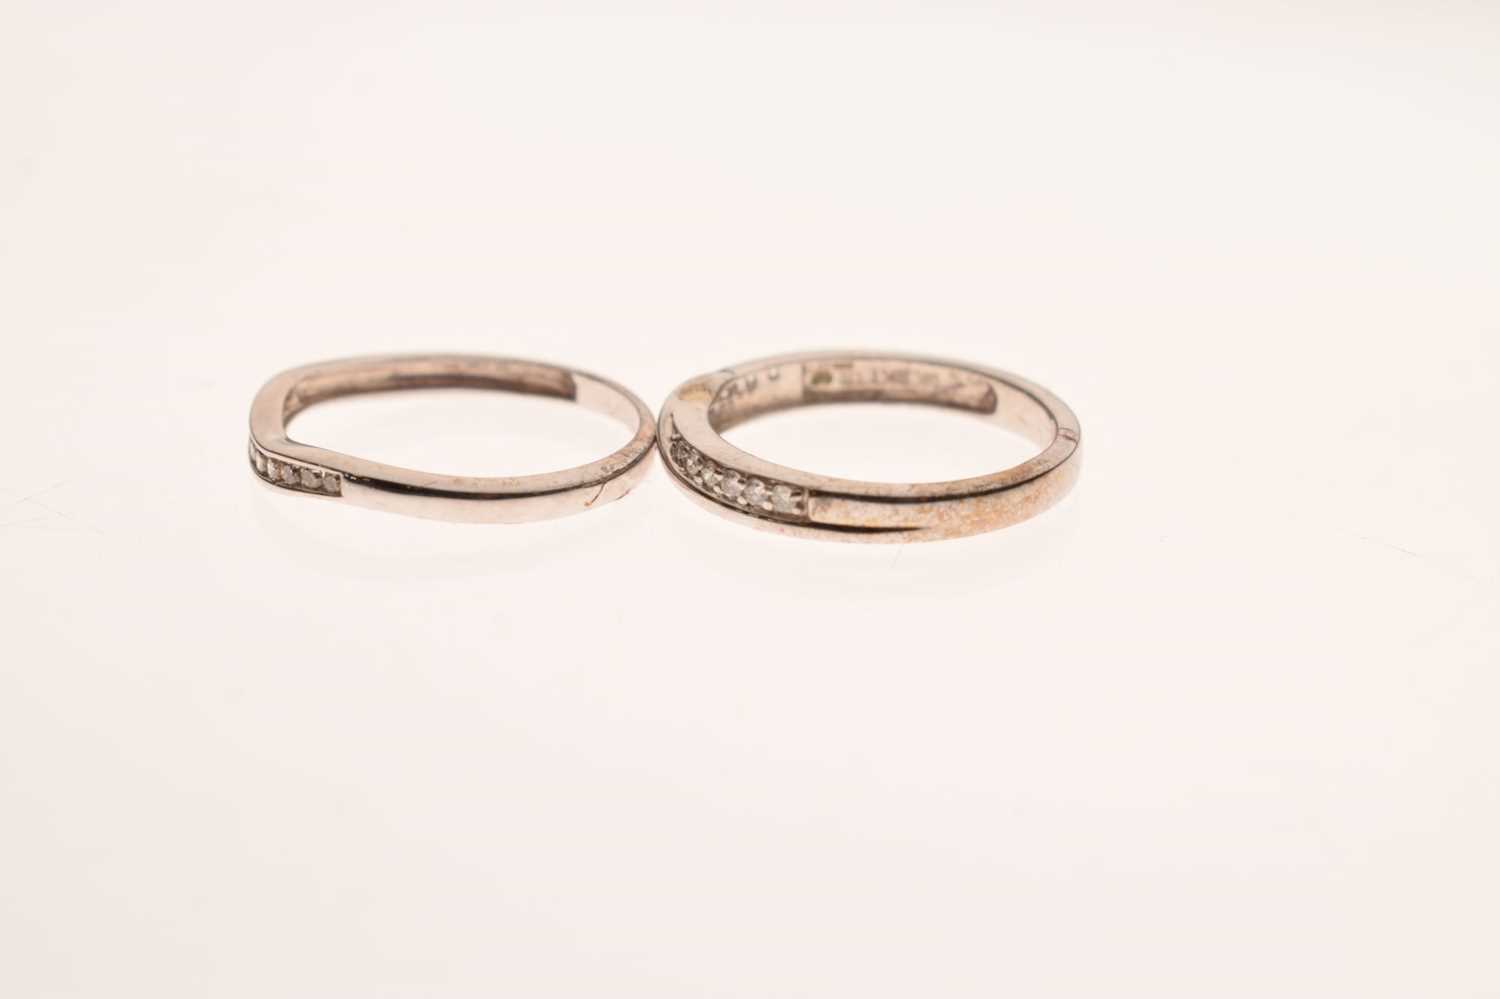 9ct white gold diamond set shaped wedding ring - Image 2 of 6